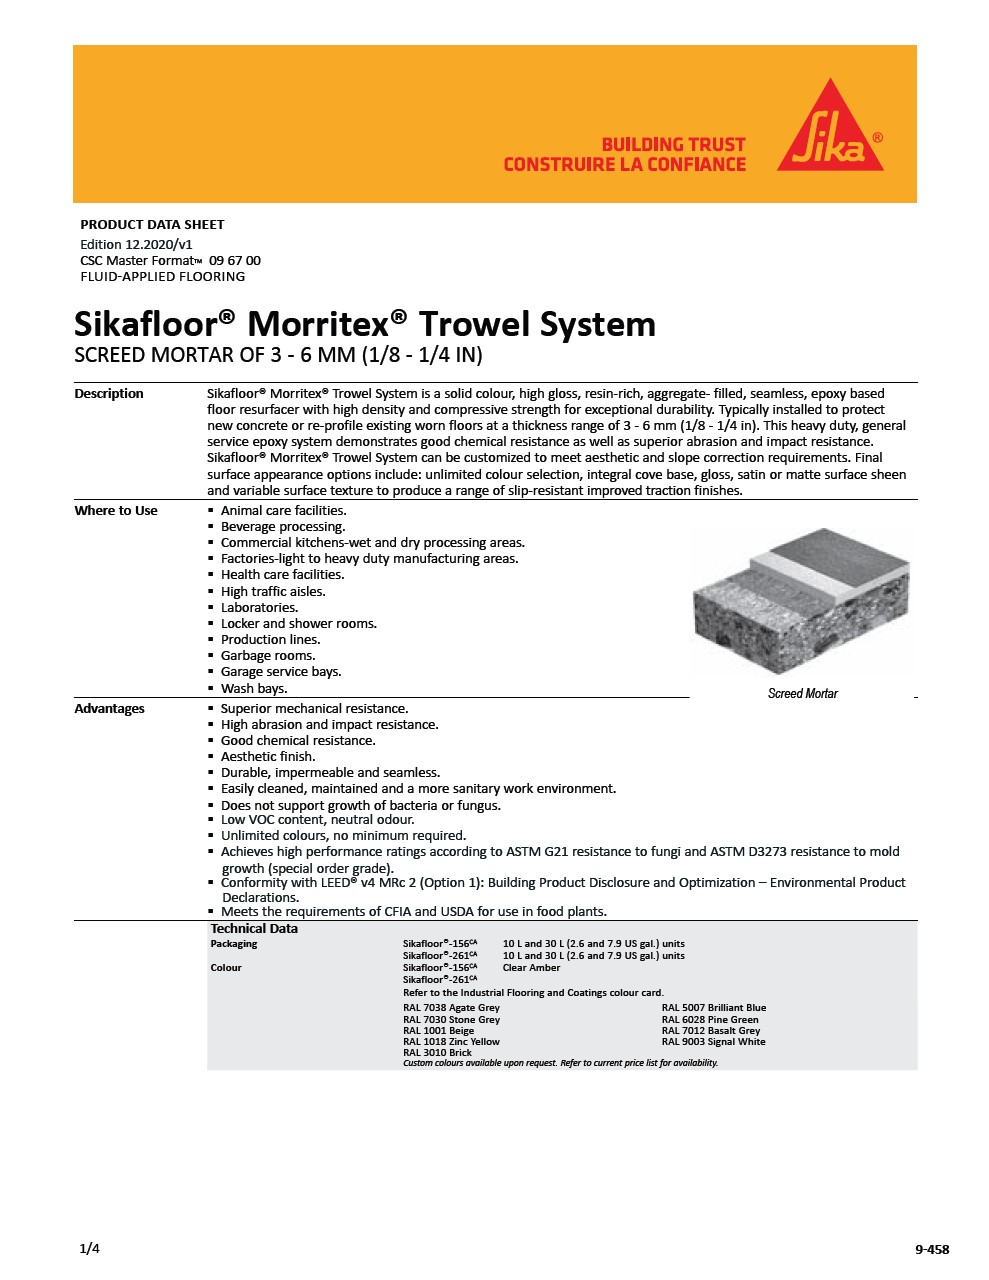 Sikafloor® Morritex® Trowel System